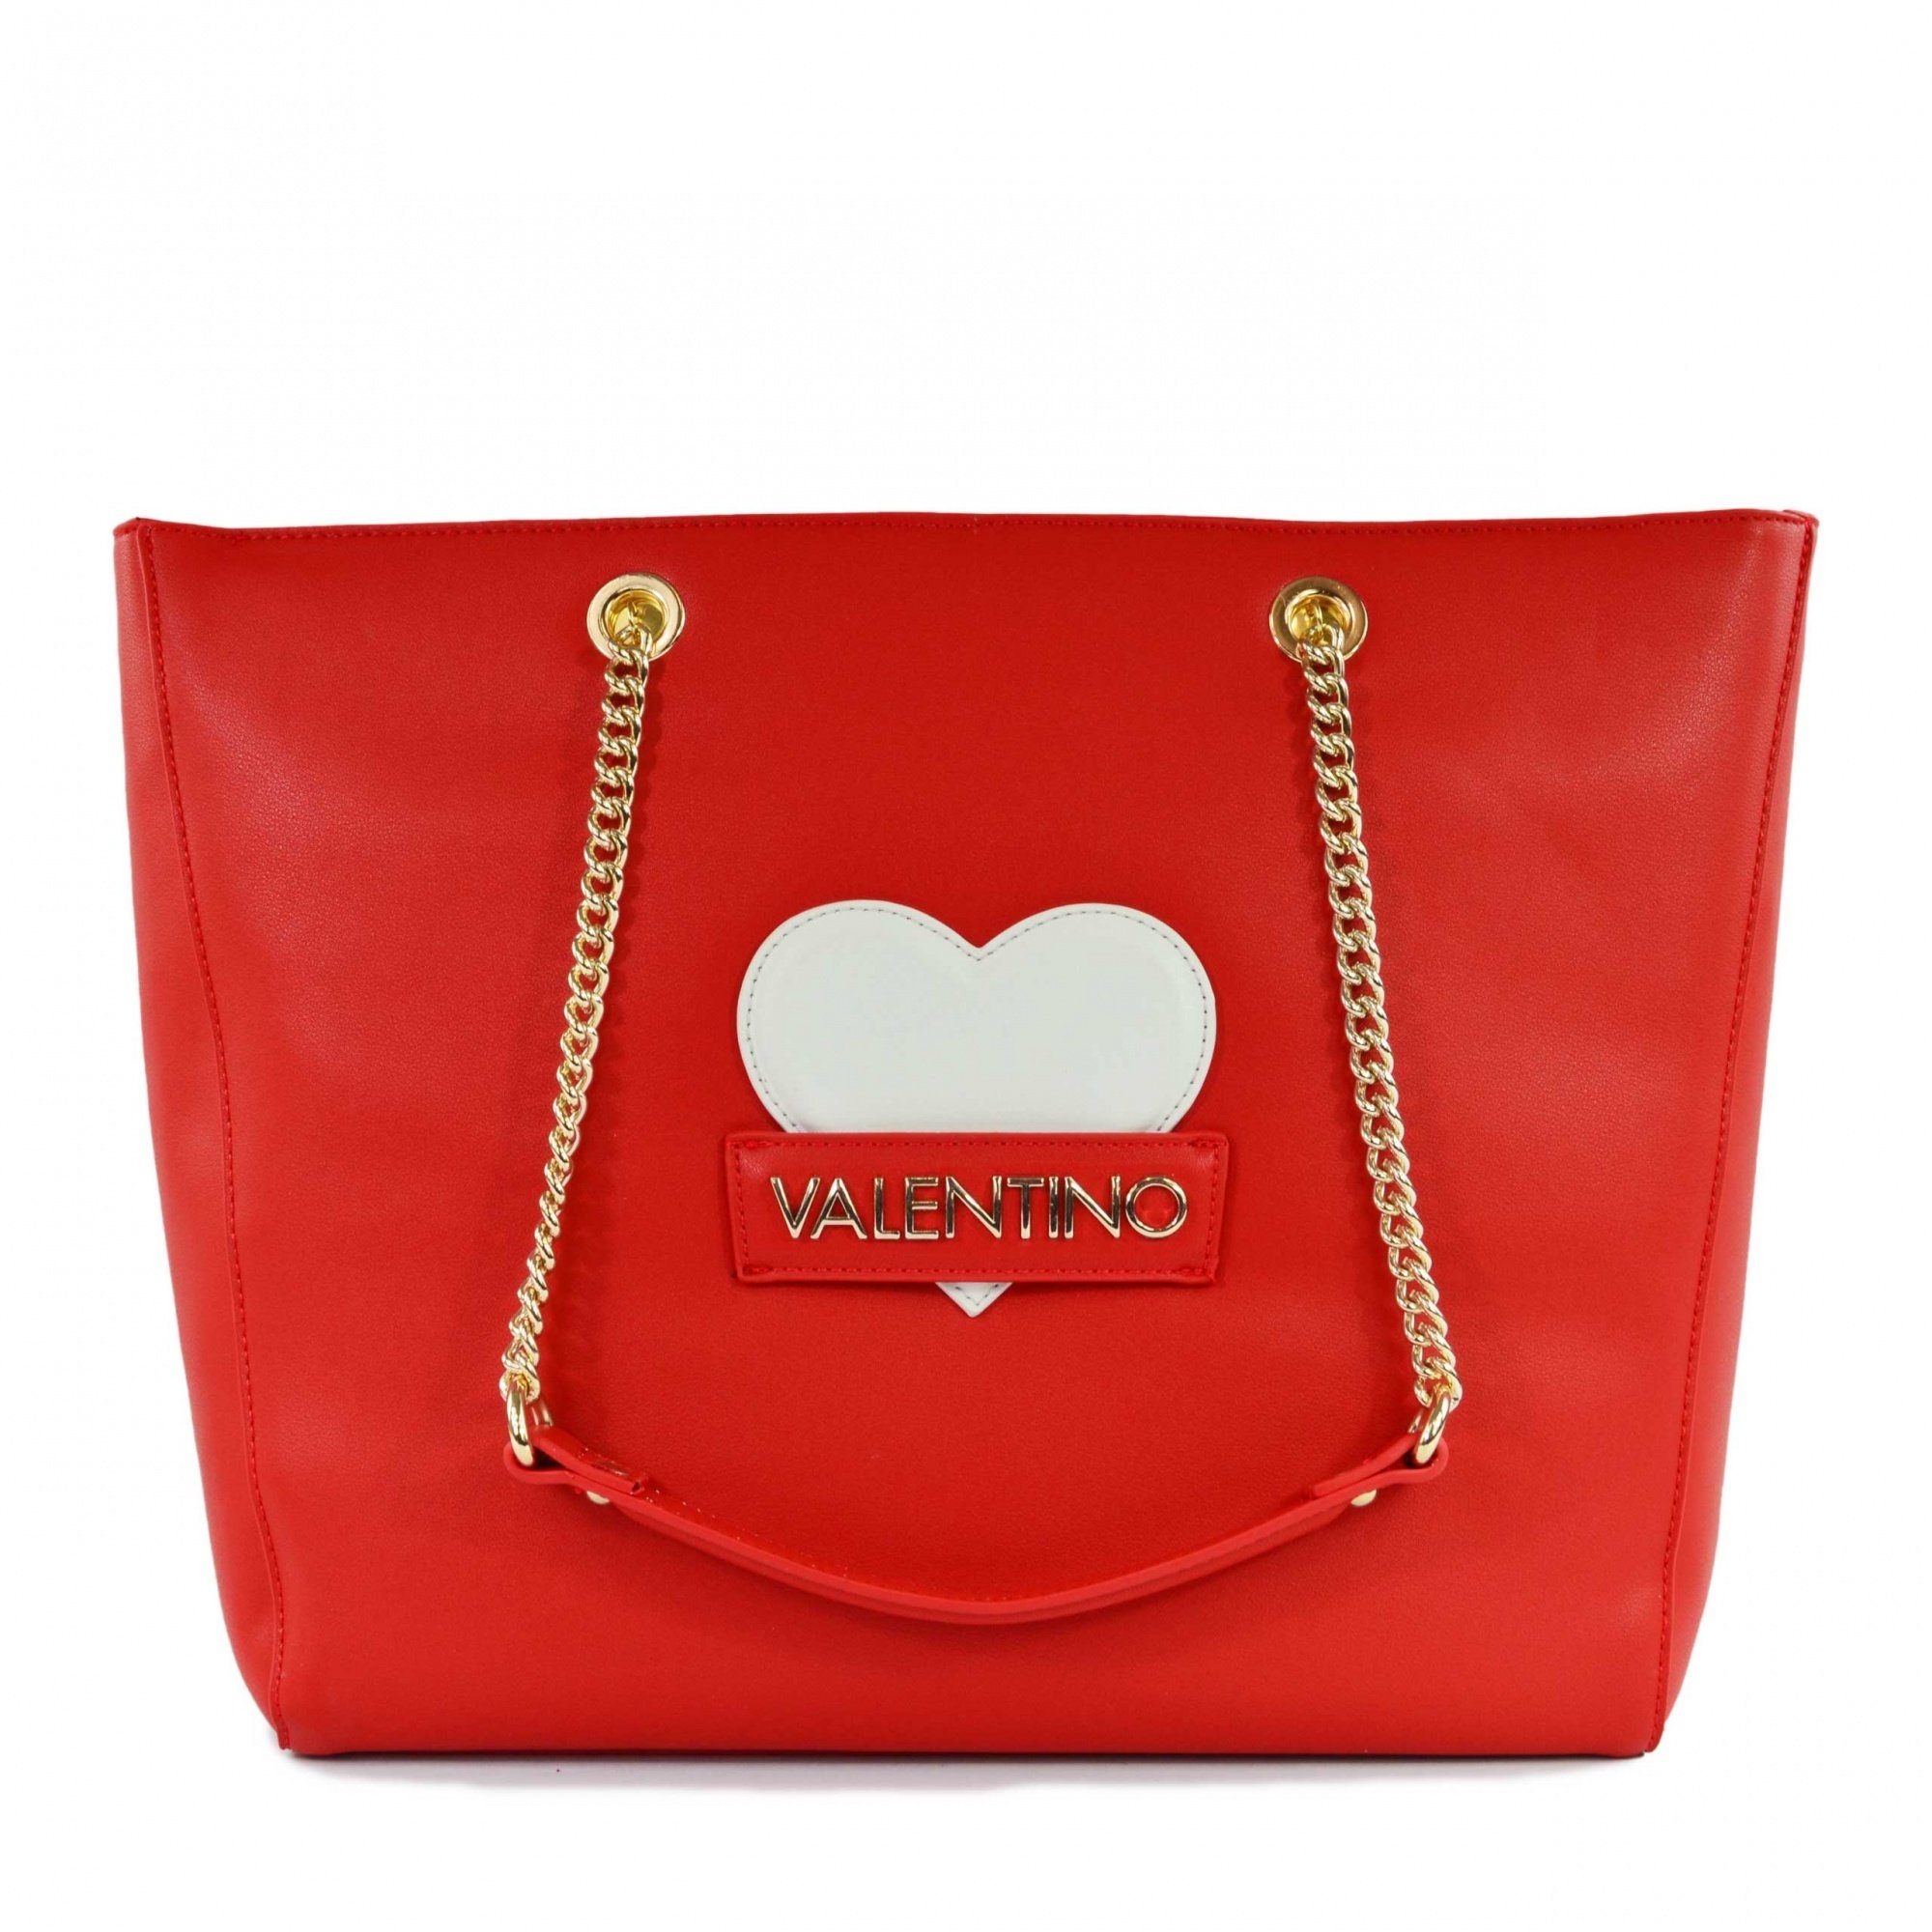 VALENTINO BAGS Handtasche Coco | Handtaschen